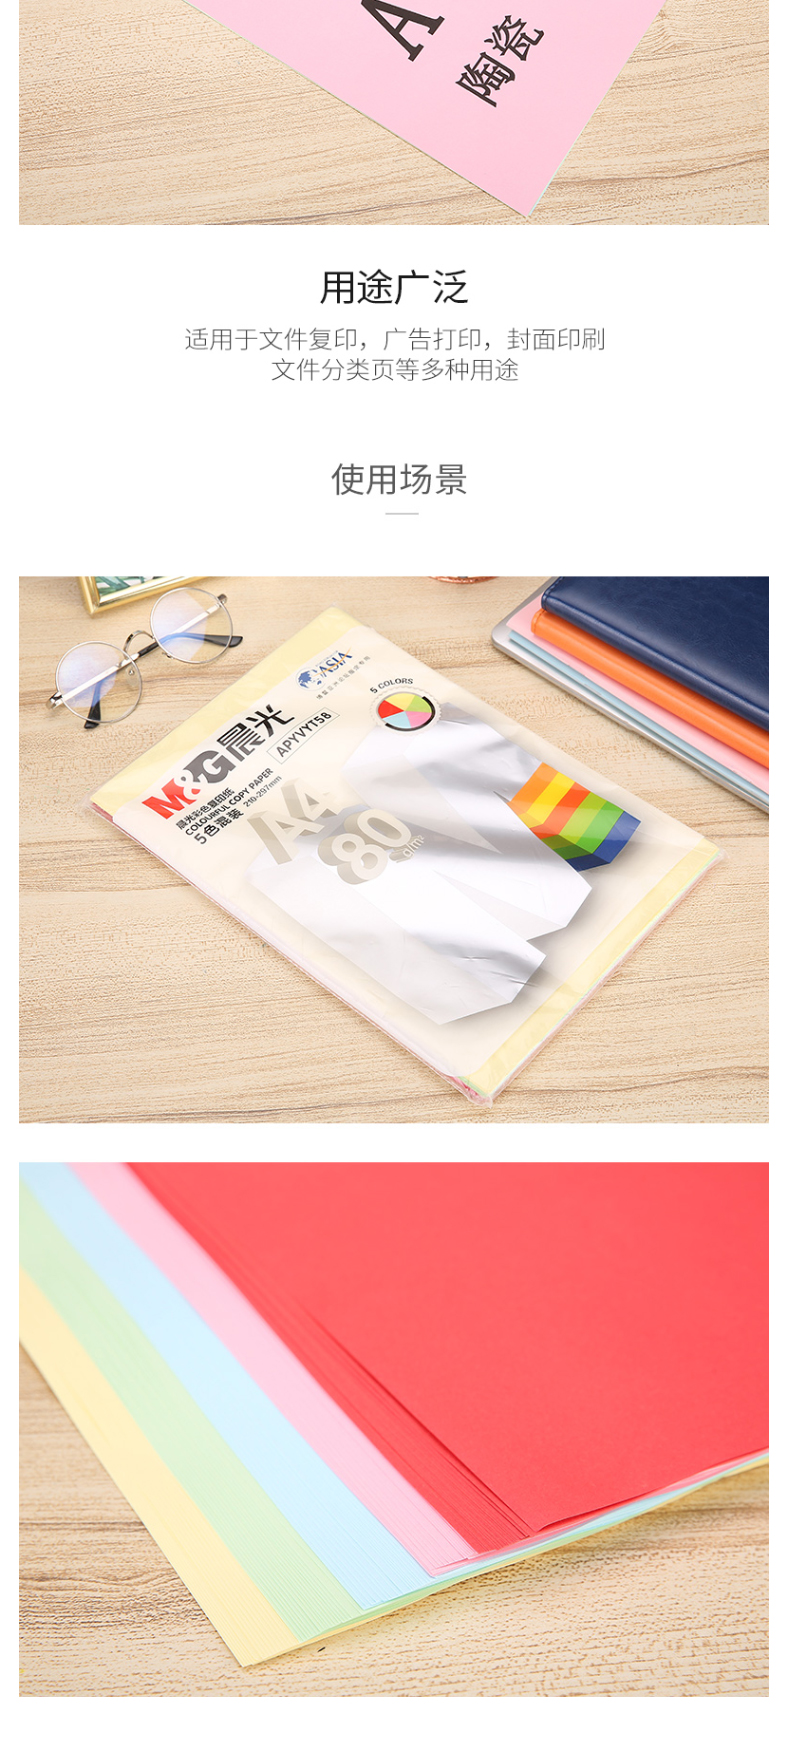 晨光 M＆G 彩色卡纸 APYVYT58 A4 80g (5色混色) 100张/包